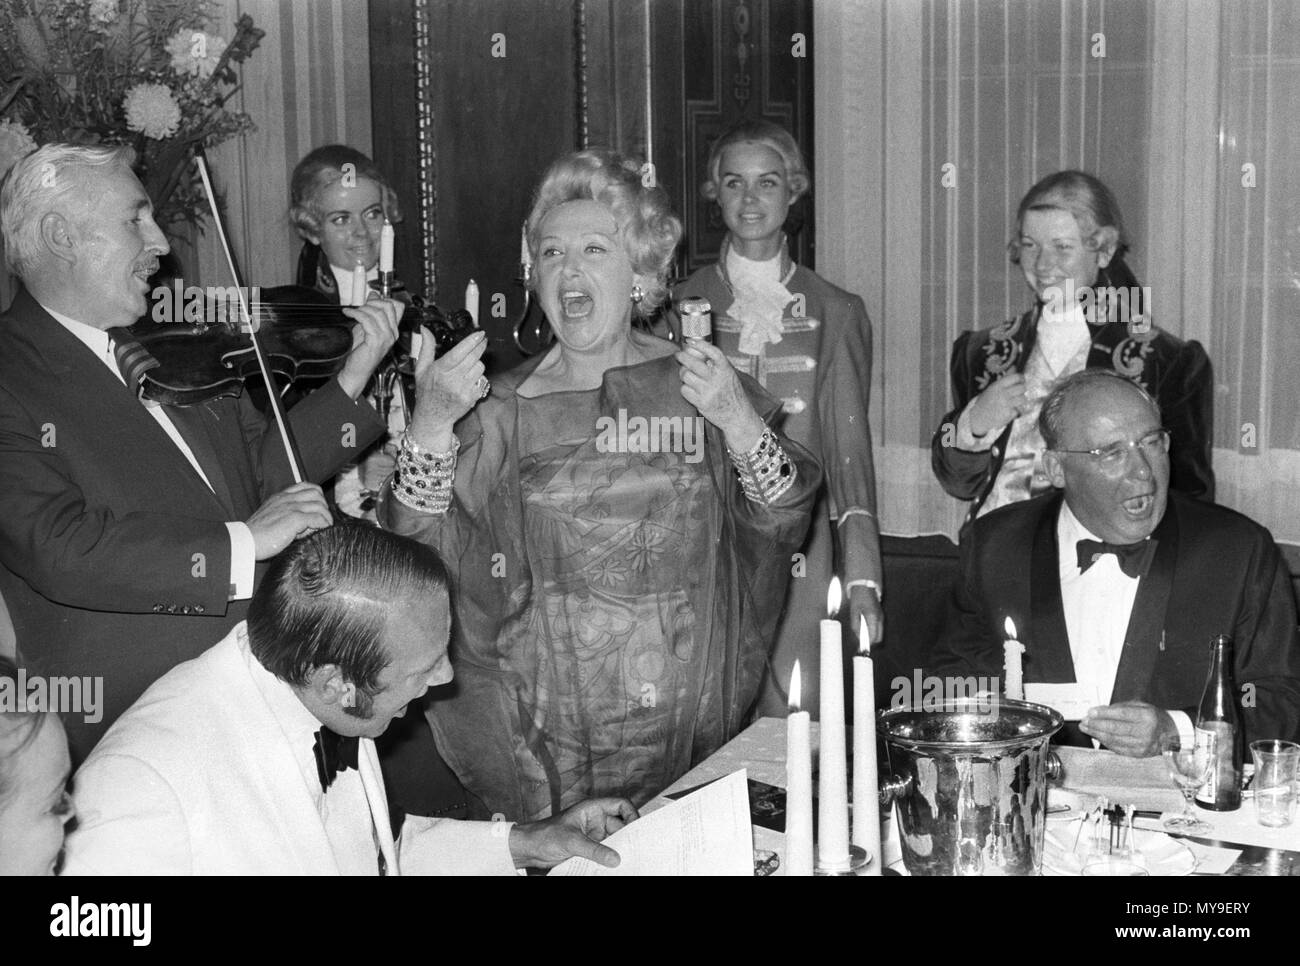 La notte di Domenica, 23 giugno 1968, a mezzanotte degustazione di vino ha avuto luogo presso la struttura Schlosshotel Gerhus im Grunewald a Berlino in occasione del festival della pellicola. | Utilizzo di tutto il mondo Foto Stock